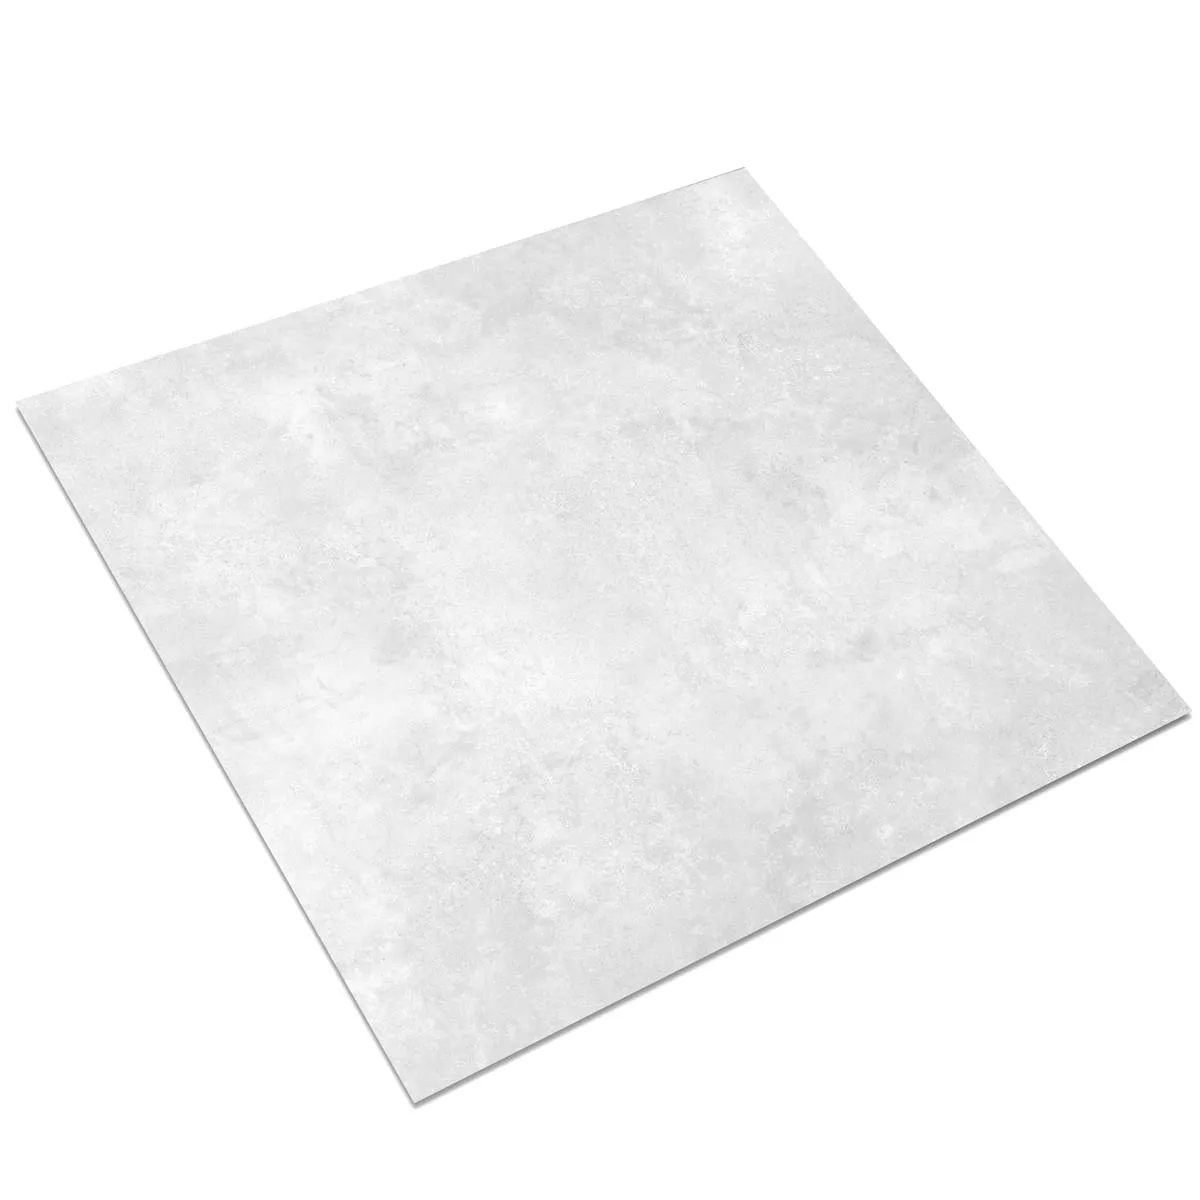 Lattialaatta Illusion Metallin Näköinen Lappato Valkoinen 120x120cm